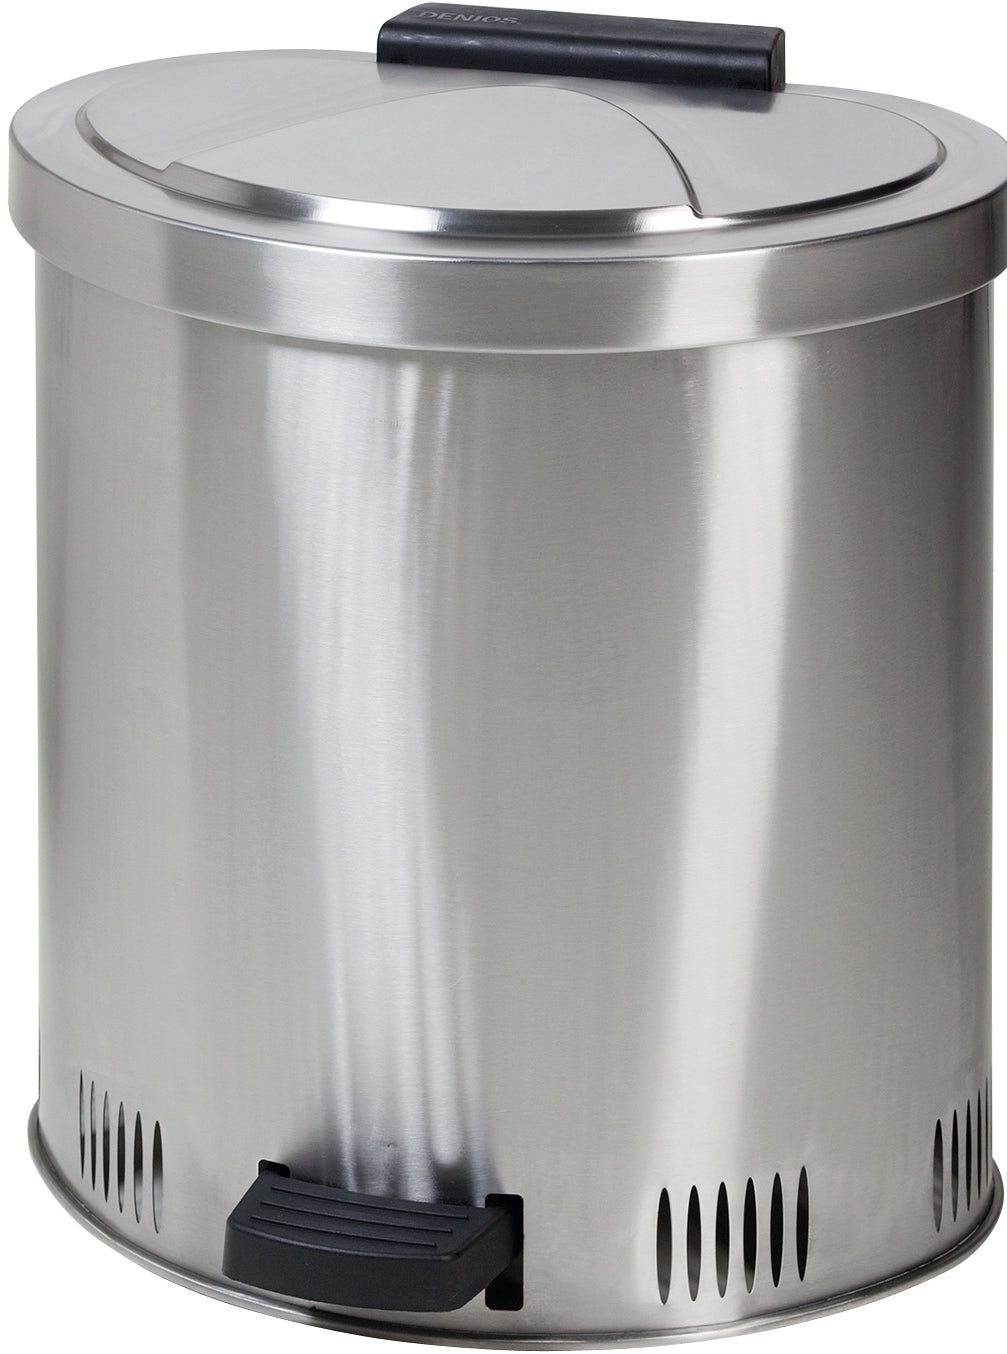 Entsorgungsbehälter für Putzlappen aus Edelstahl, 50 Liter, Edelstahl 1.4301 poliert